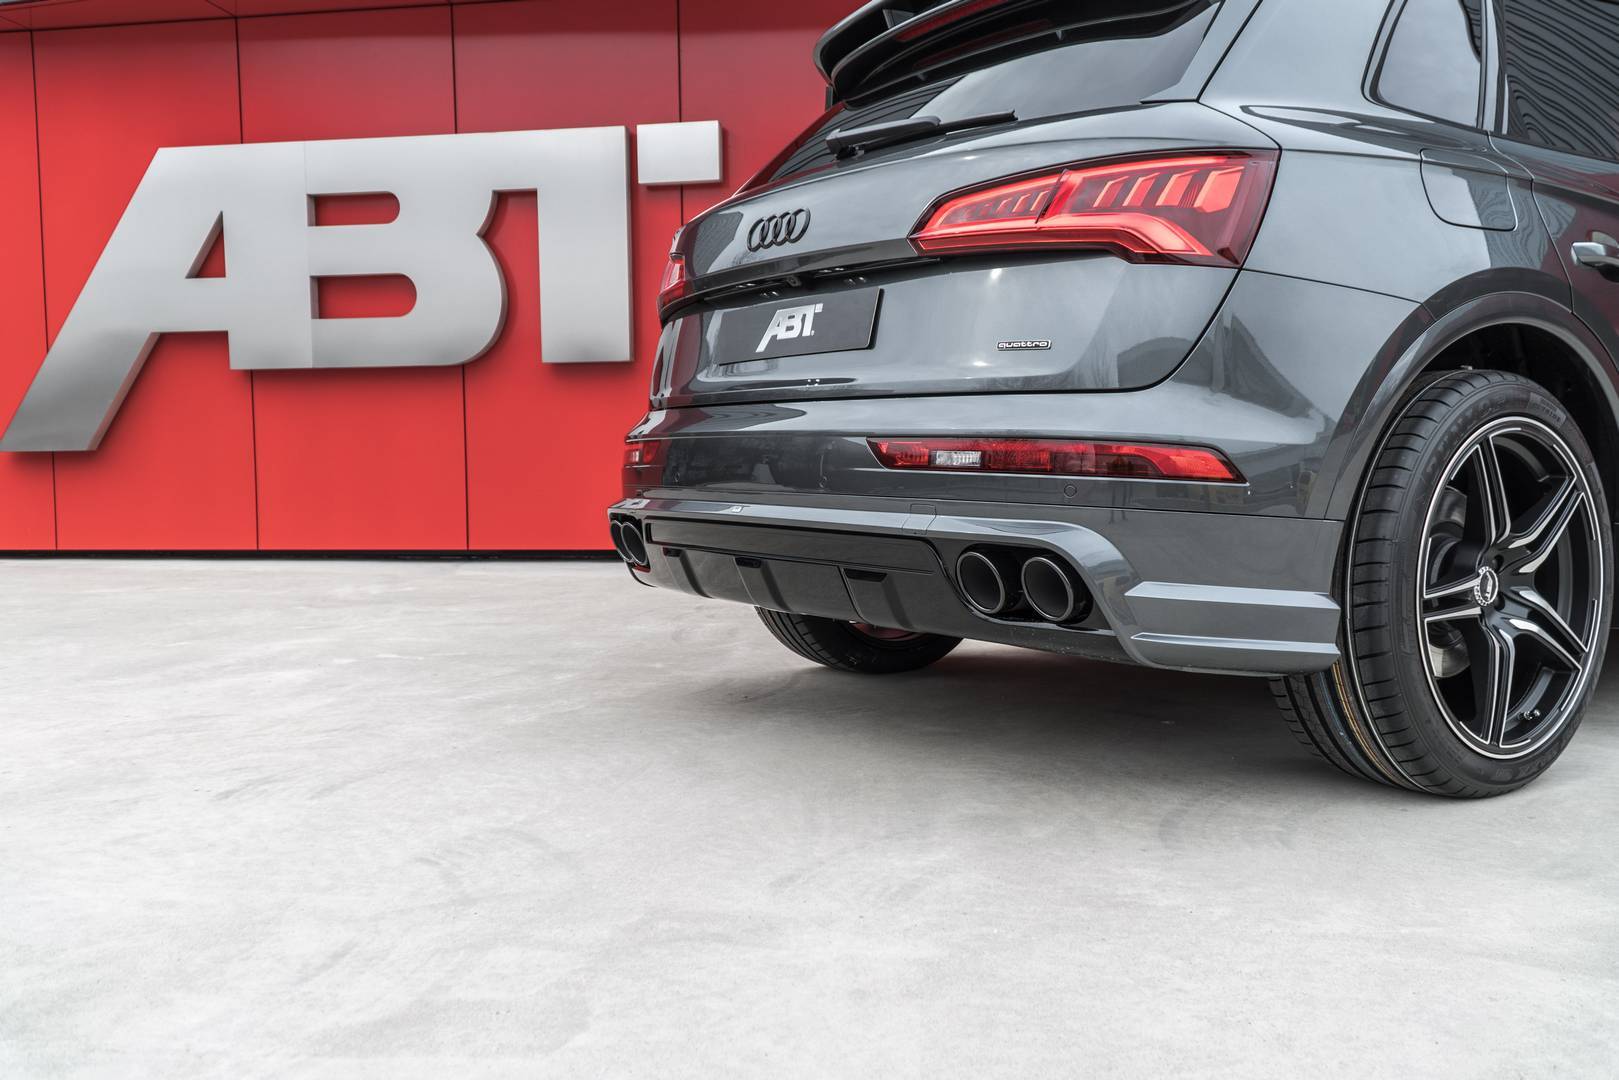 В России будет продаваться эксклюзивная серия Audi Q5 ABT Edition